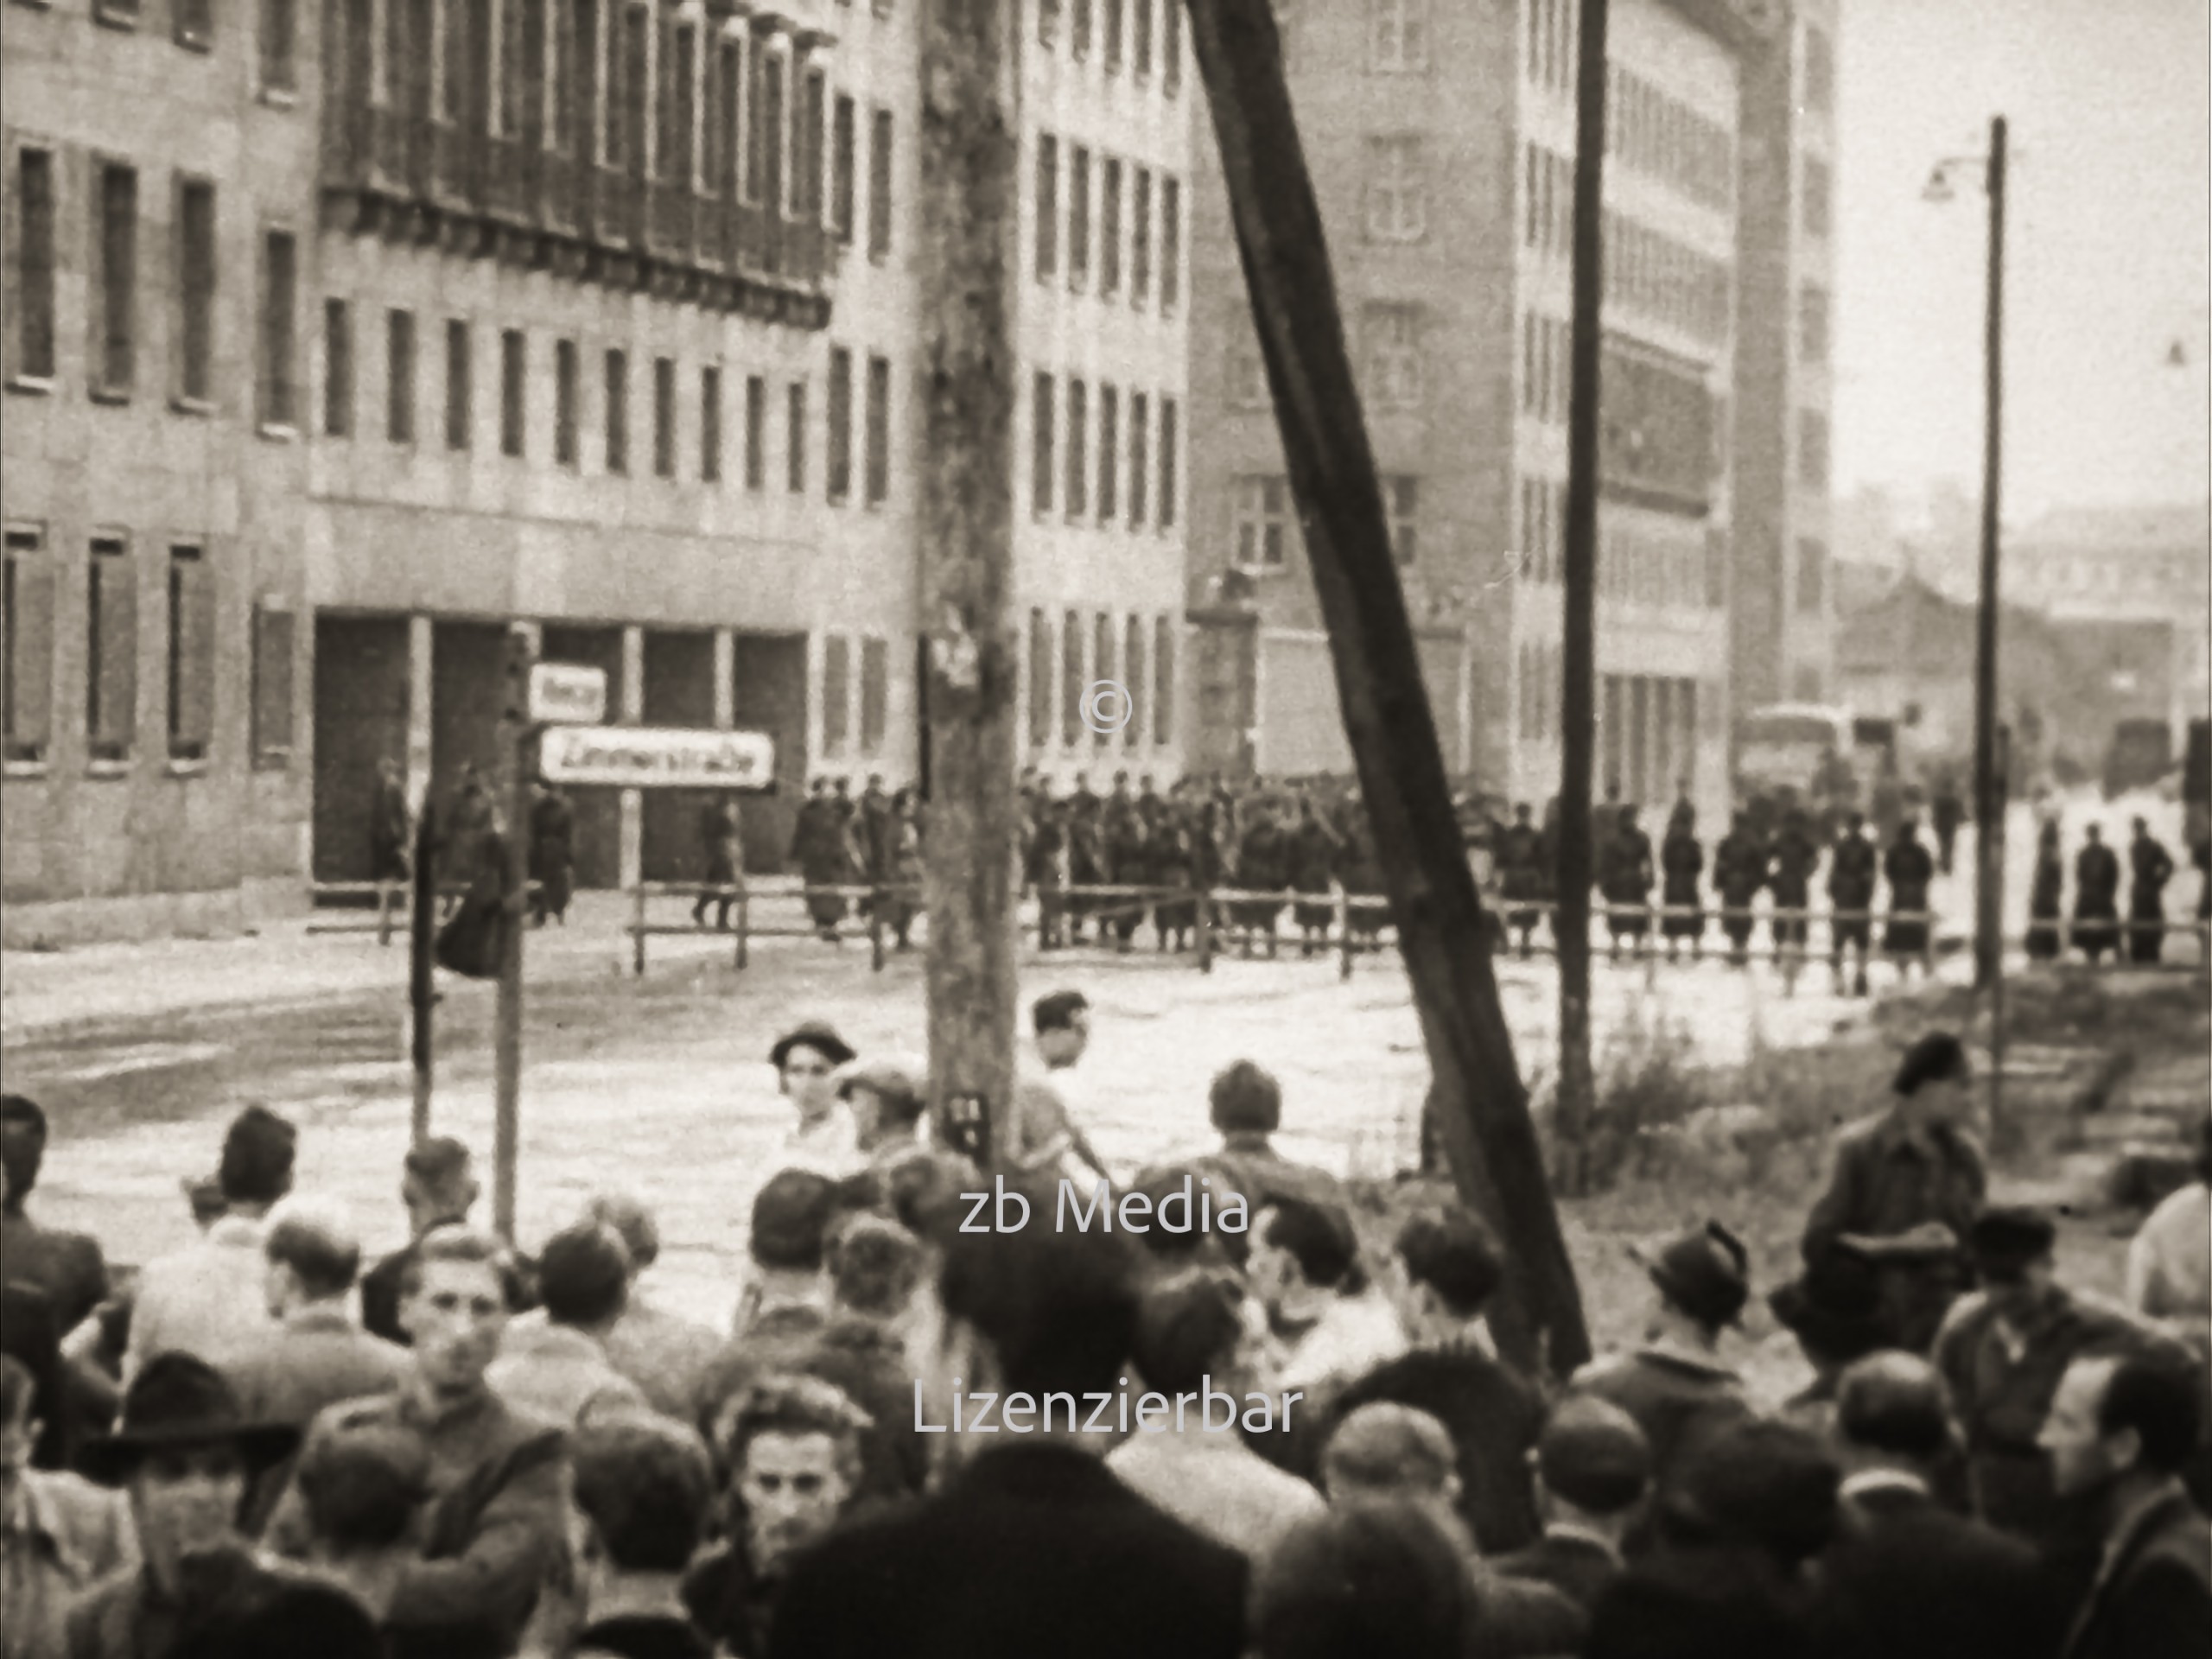 Menschenmenge in Berlin am 17. Juni 1953